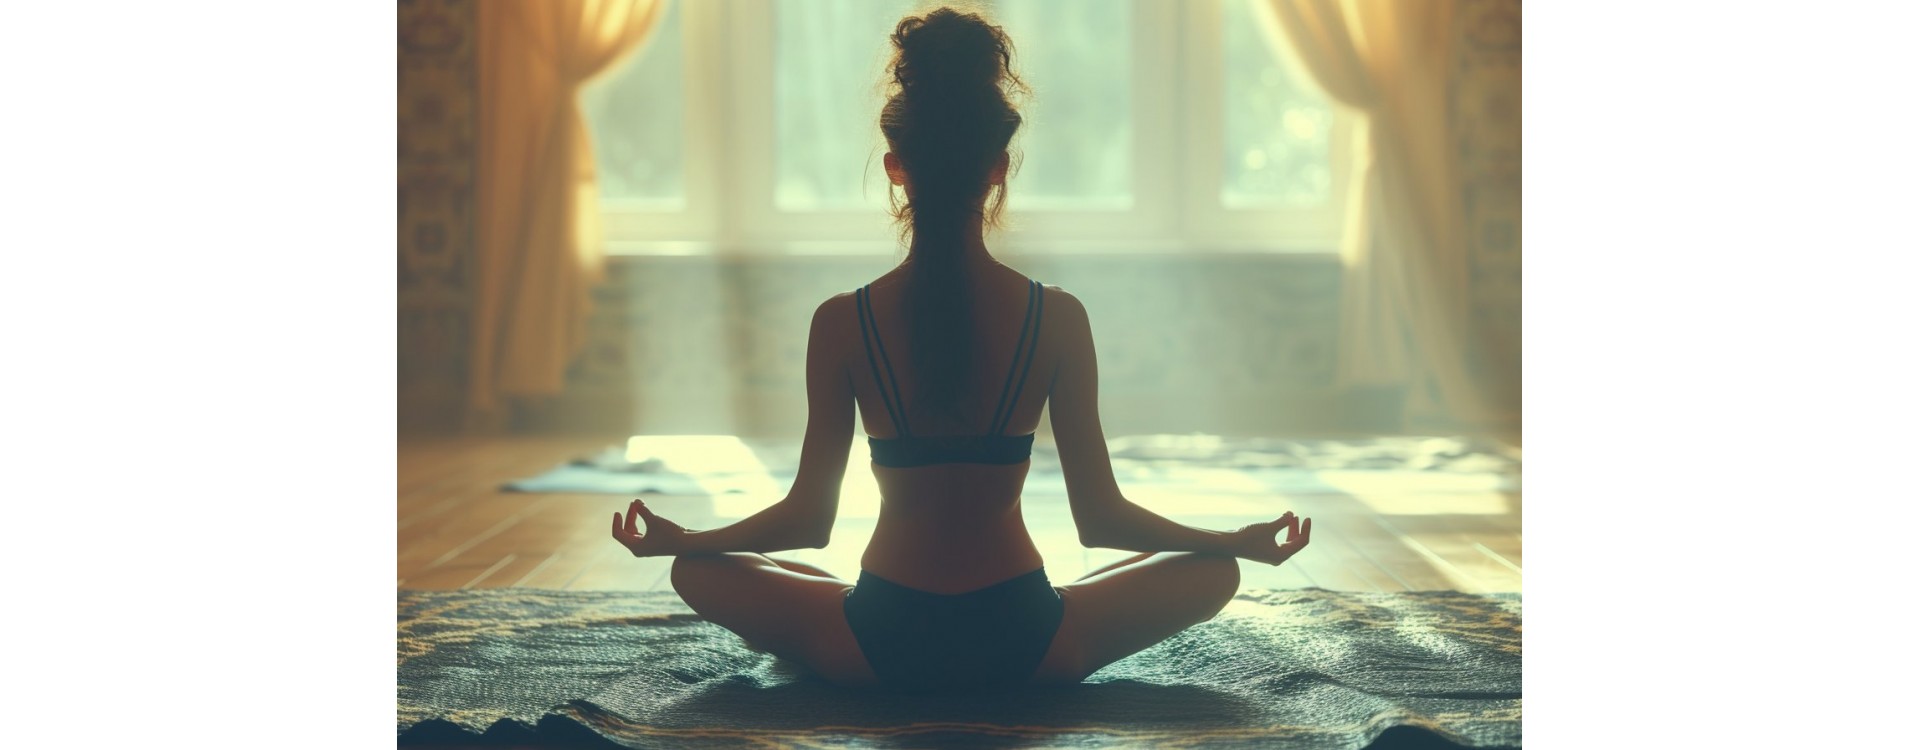 Le Hatha yoga : une pratique ancestrale aux multiples bienfaits